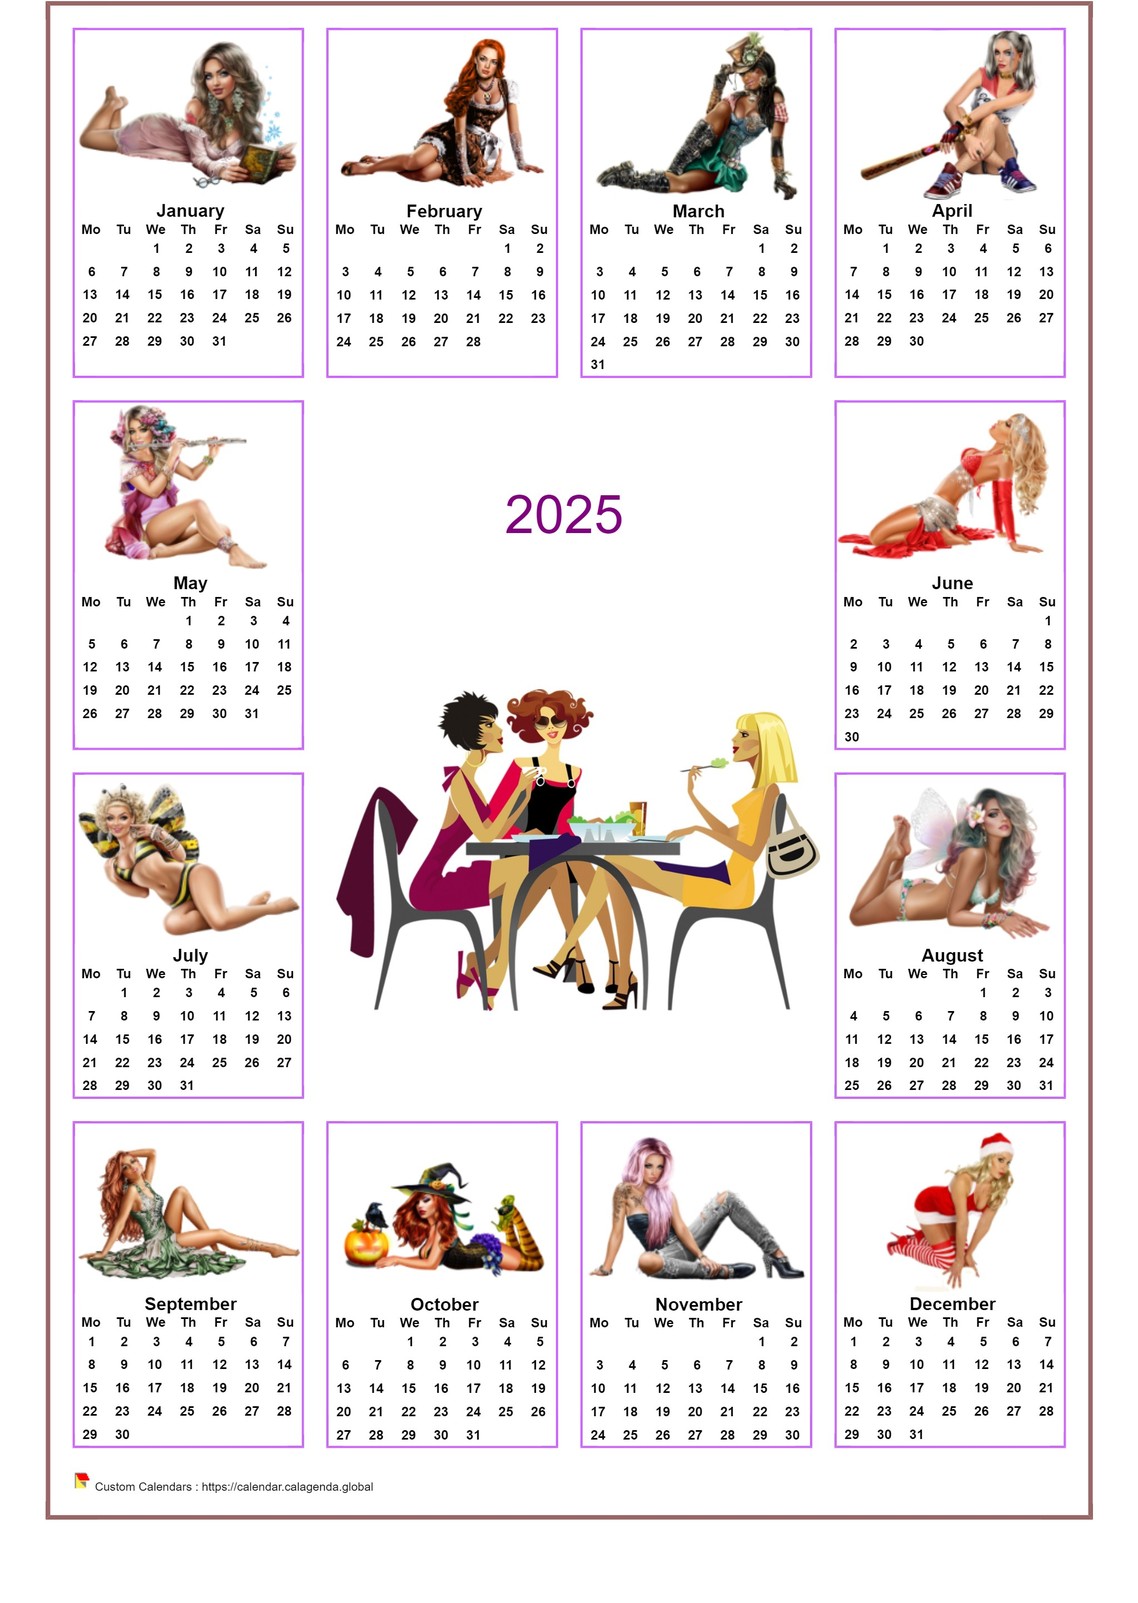  2025 annual calendar tubes women